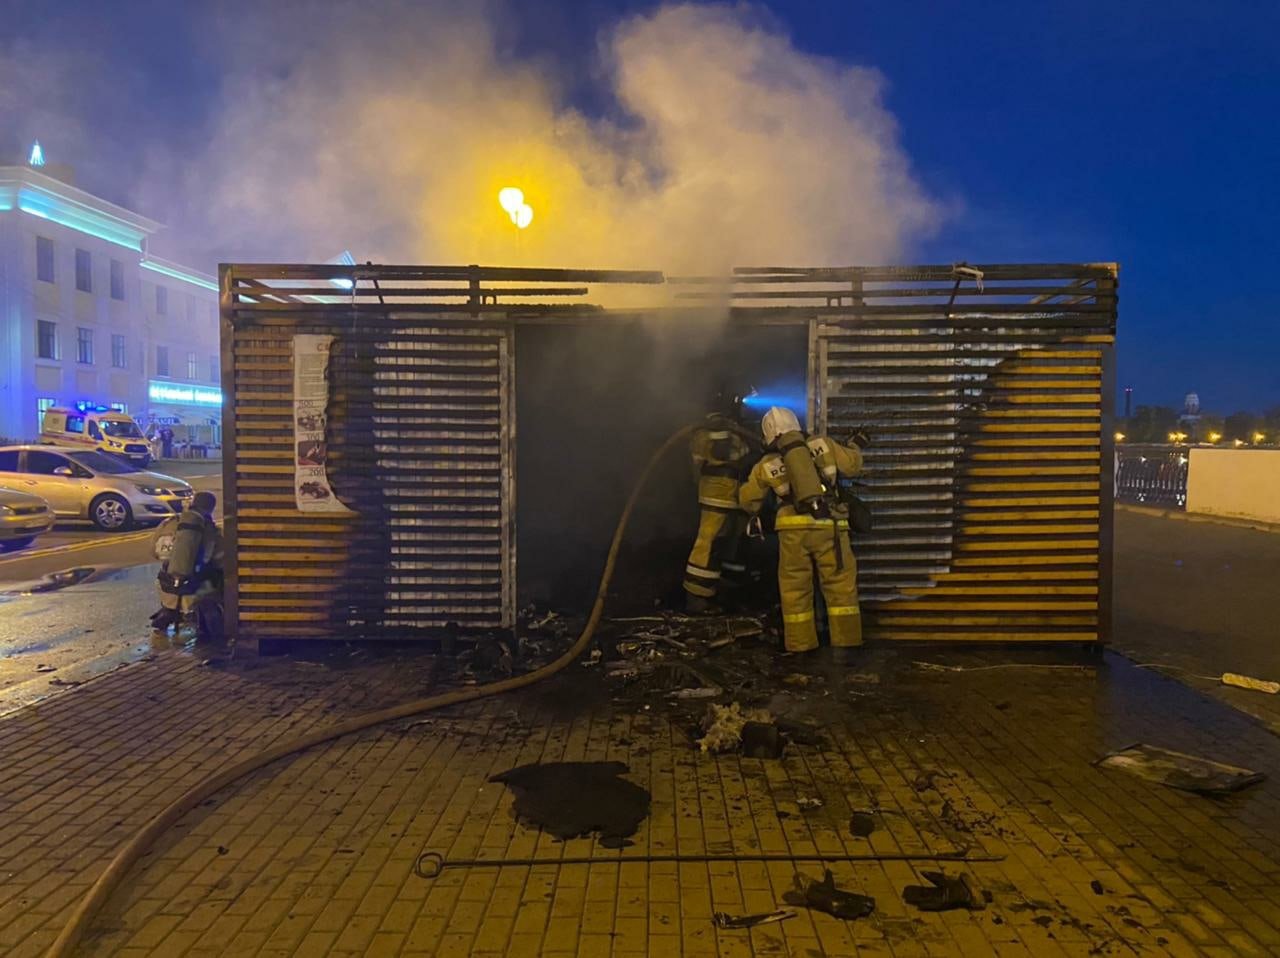 

В МЧС по Удмуртии назвали предварительную причину возгорания пункта проката на набережной Ижевска

